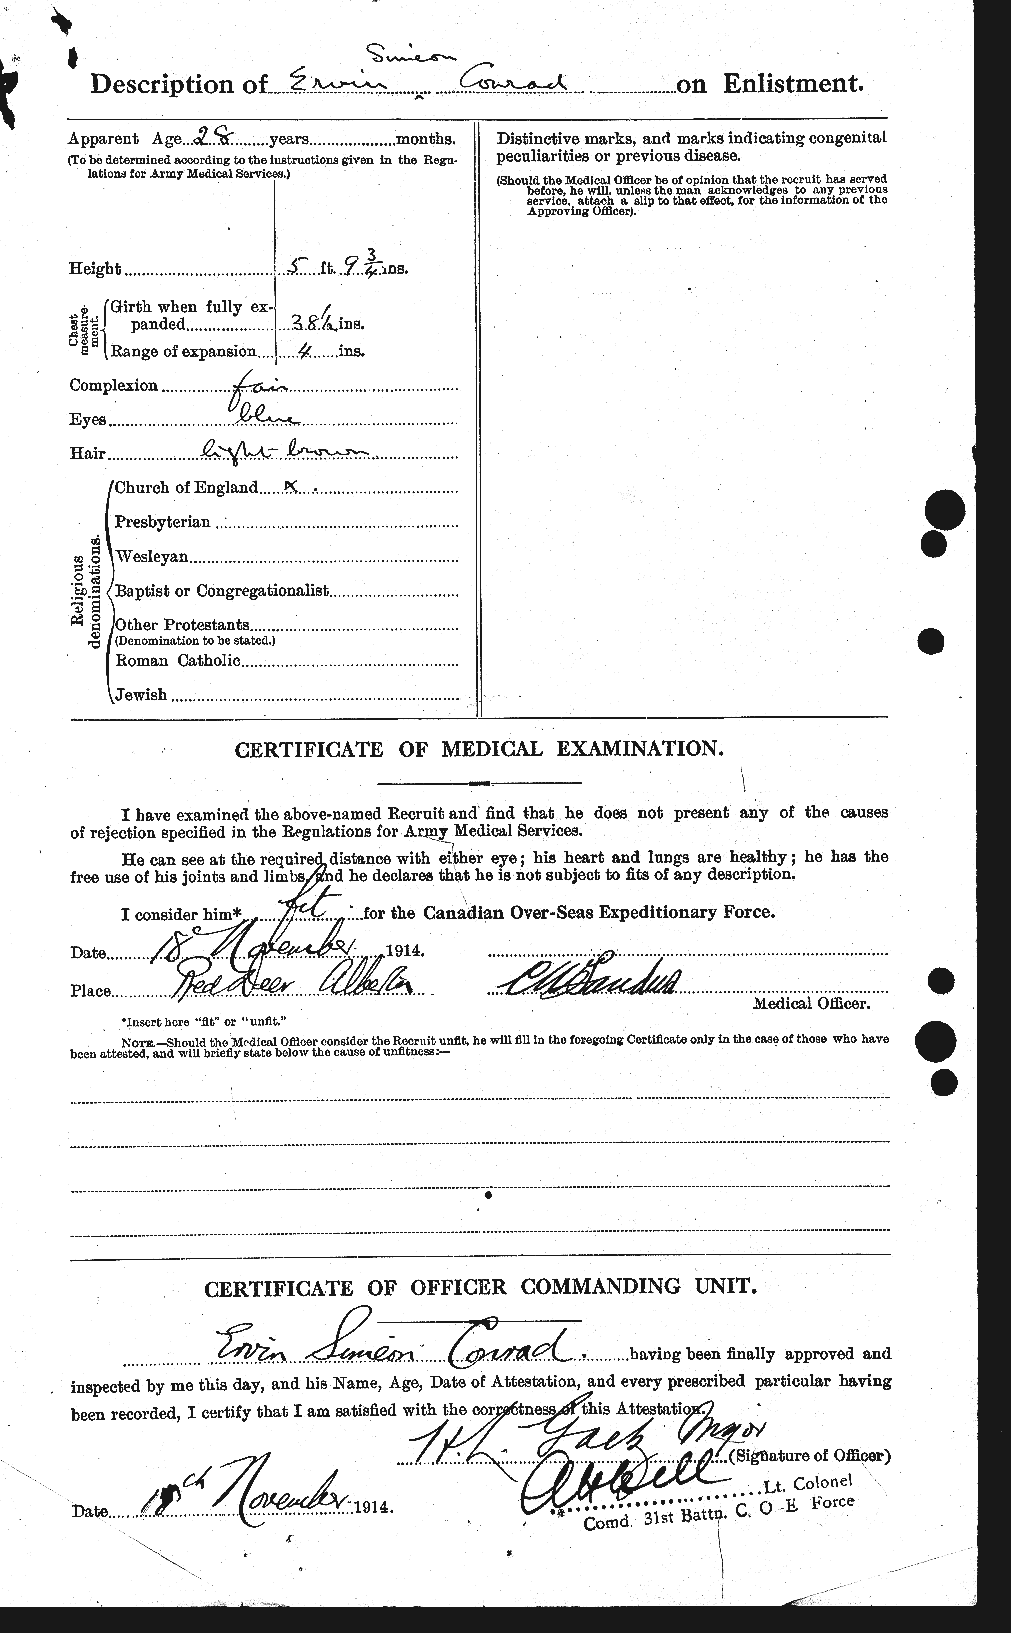 Dossiers du Personnel de la Première Guerre mondiale - CEC 071057b